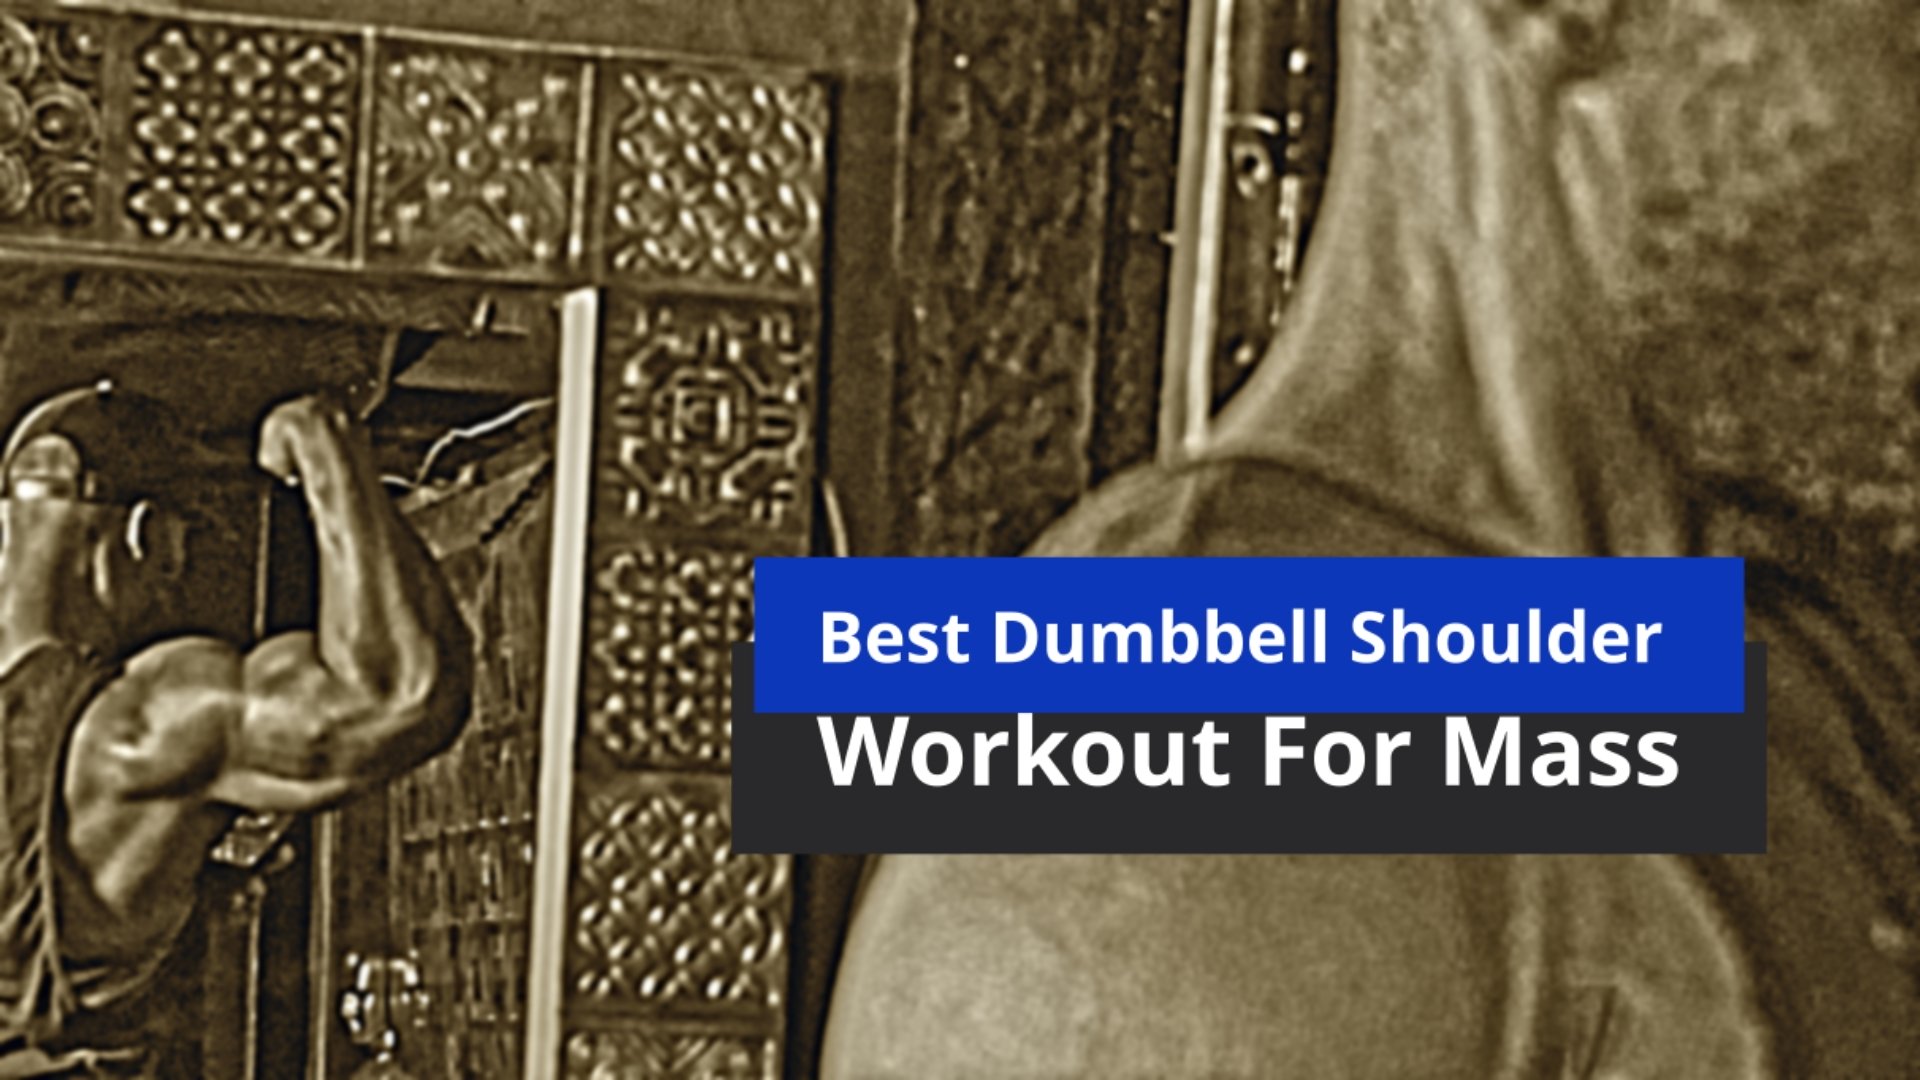 Best Dumbbell Shoulder Workout For Mass